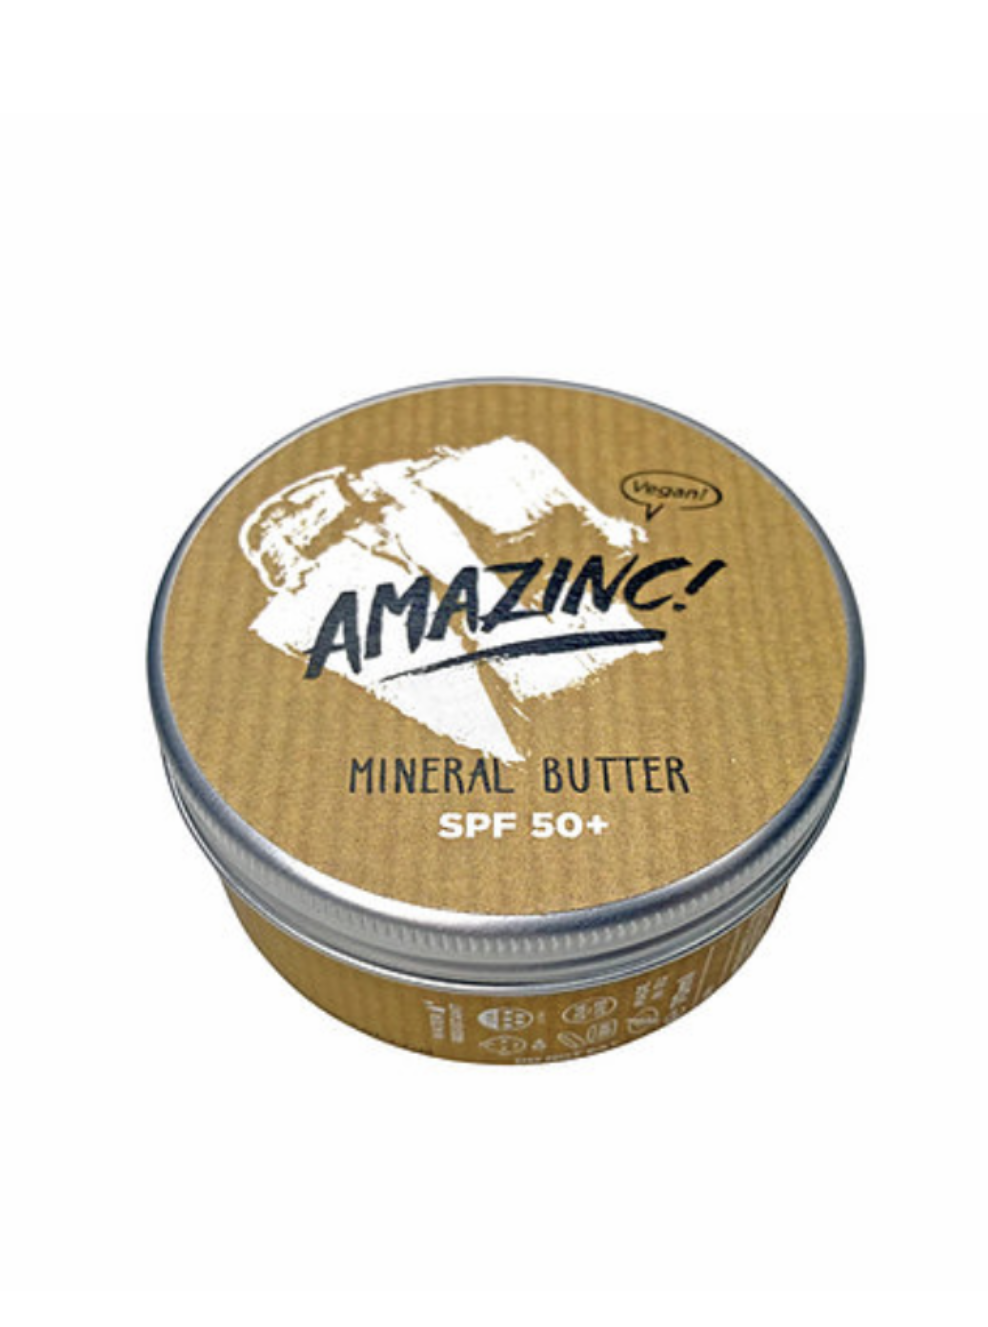 Amazinc! Mineral Body Butter SPF 50+ Sunscreen - 70ml